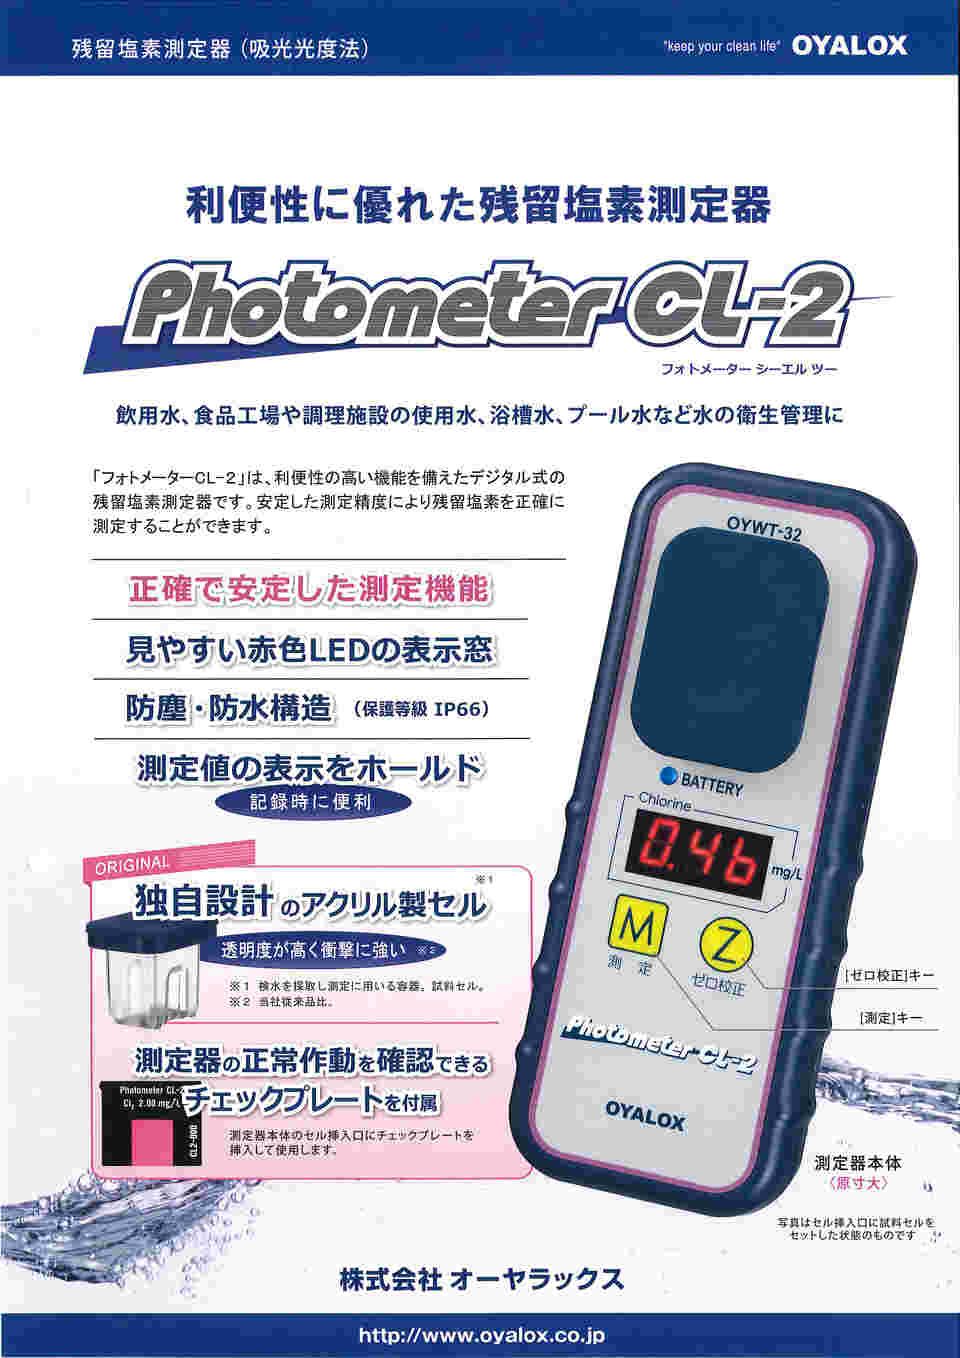 2-7237-11 残留塩素測定器 PhotometerCL-2 本体 OYWT-32 【AXEL】 アズワン